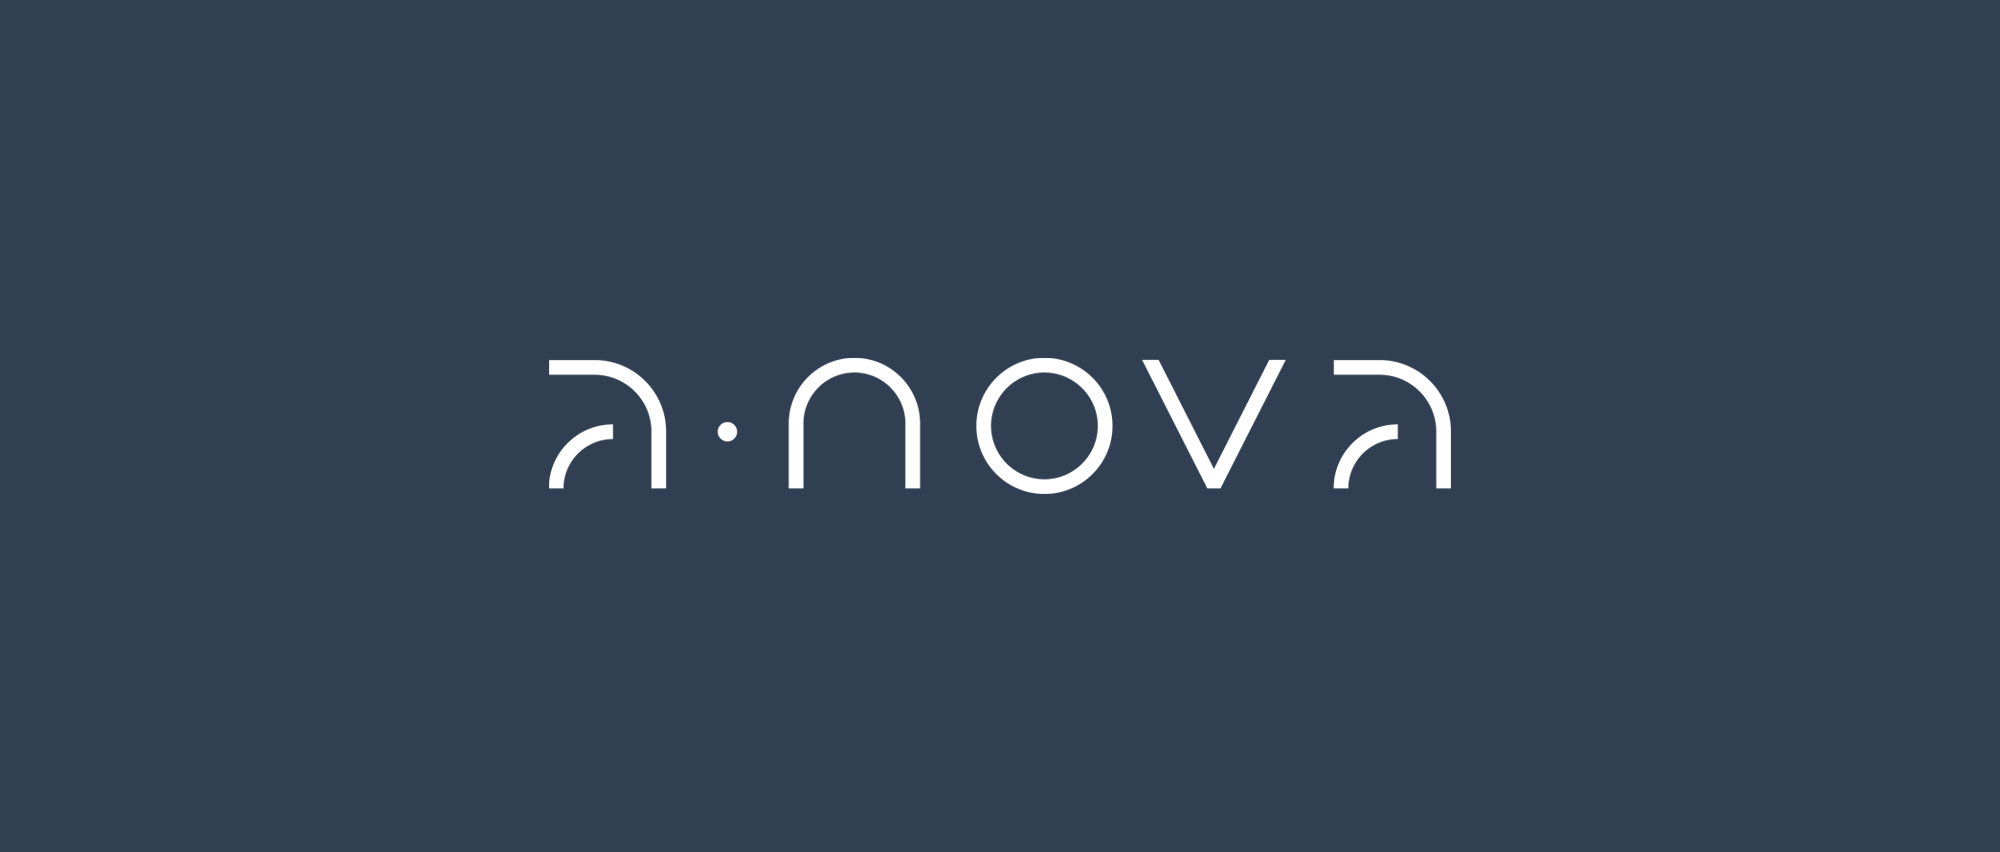 Bienvenue sur le nouveau site web de “a-nova”